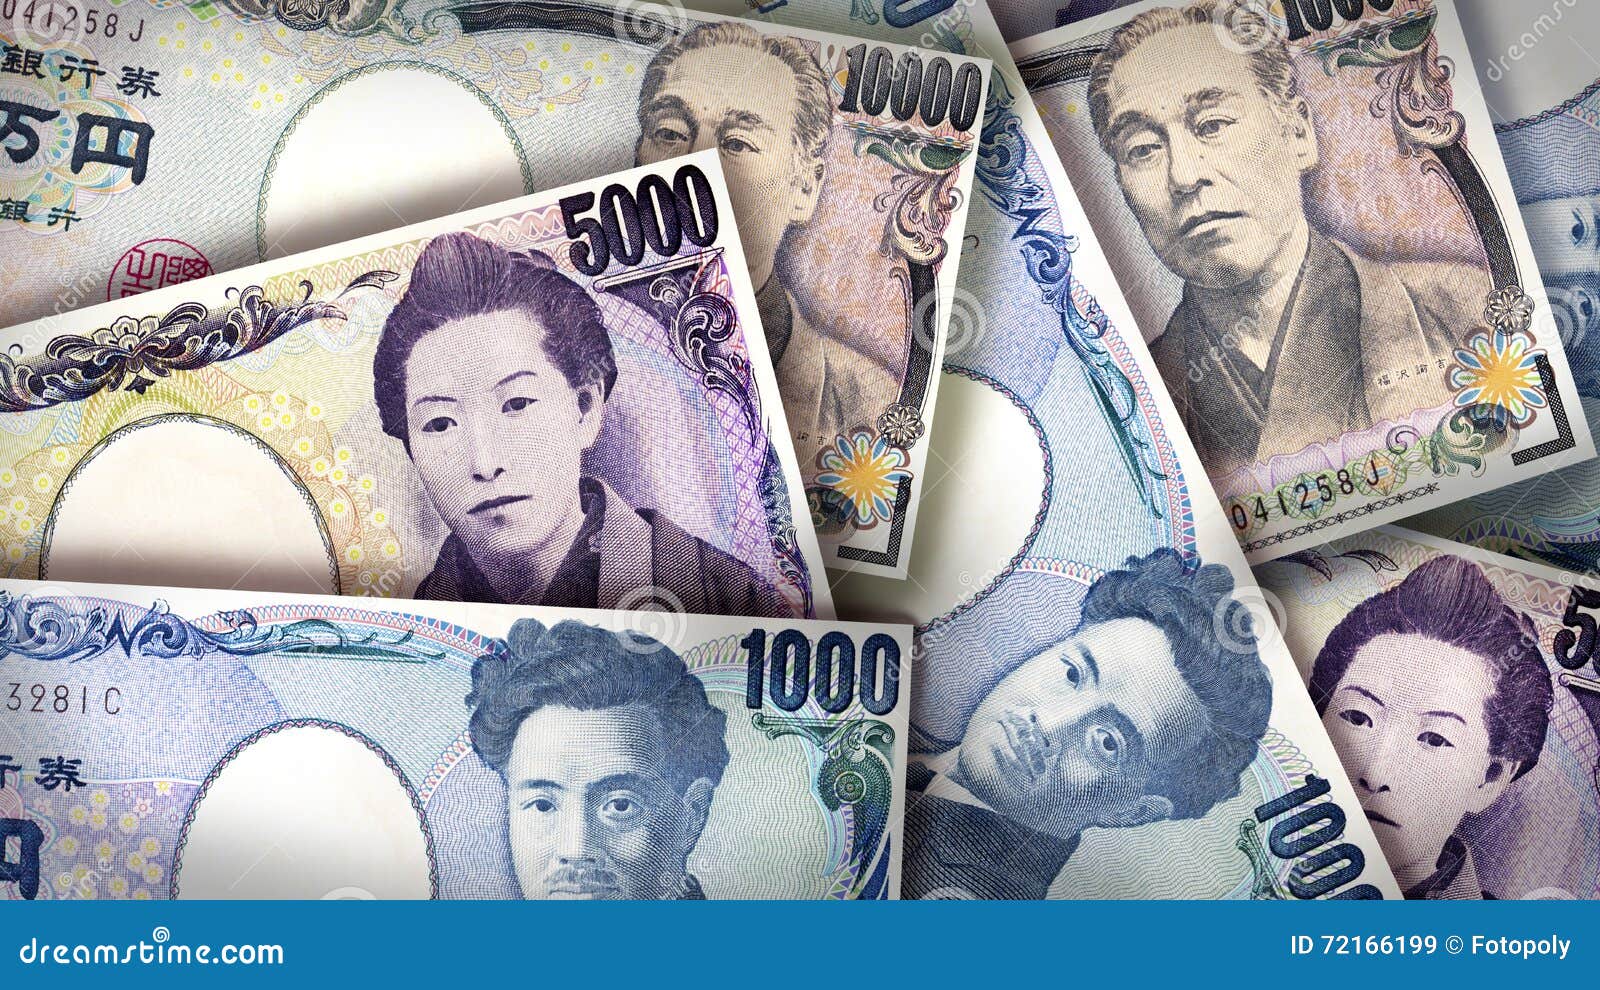 ญี่ปุ่นเตรียมพิมพ์ธนบัตรใหม่ 10,000 เยน ที่จะใช้เทคโนโลยีโฮโลแกรม 3 มิติที่แรกในโลก